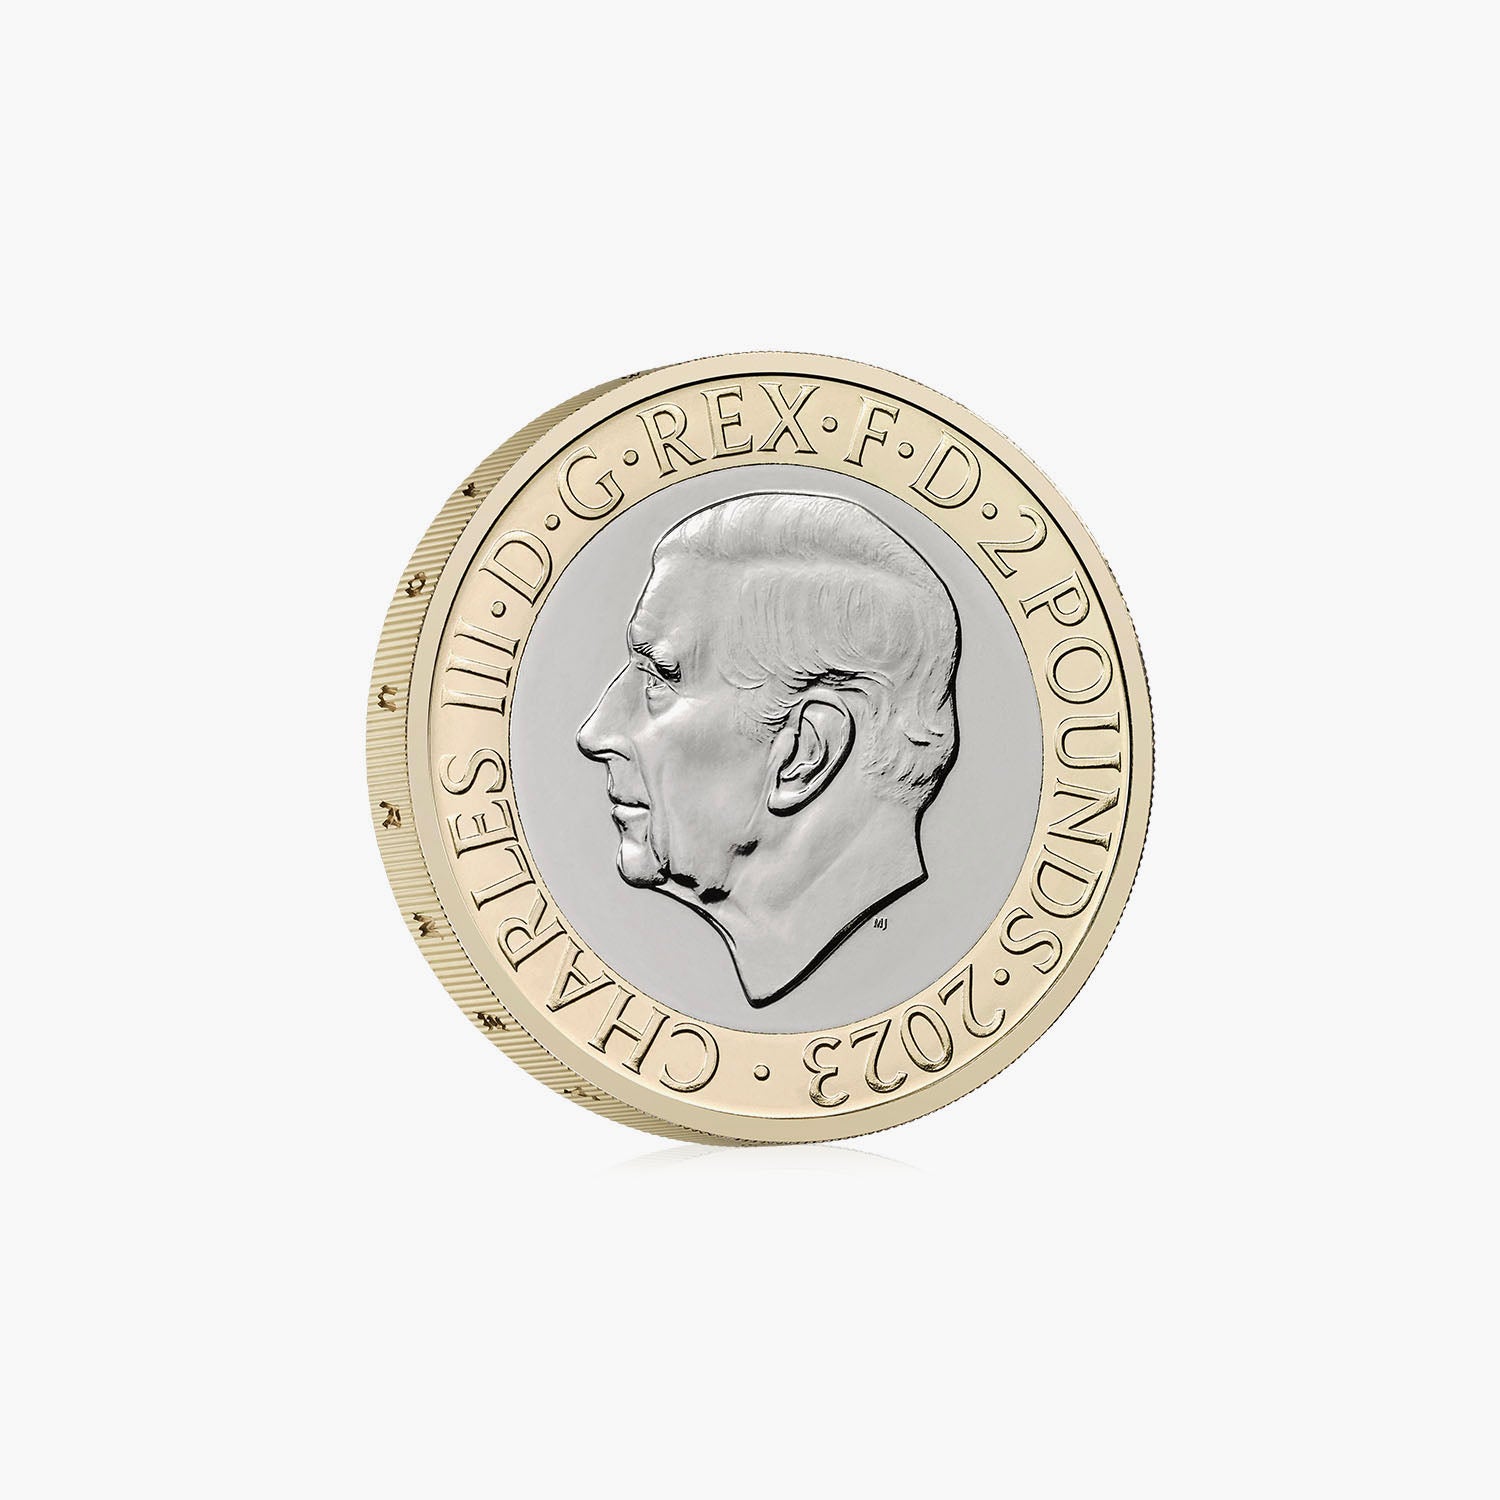 フライング スコッツマン 100 周年 2023 英国 £2 ブリリアント未流通コイン